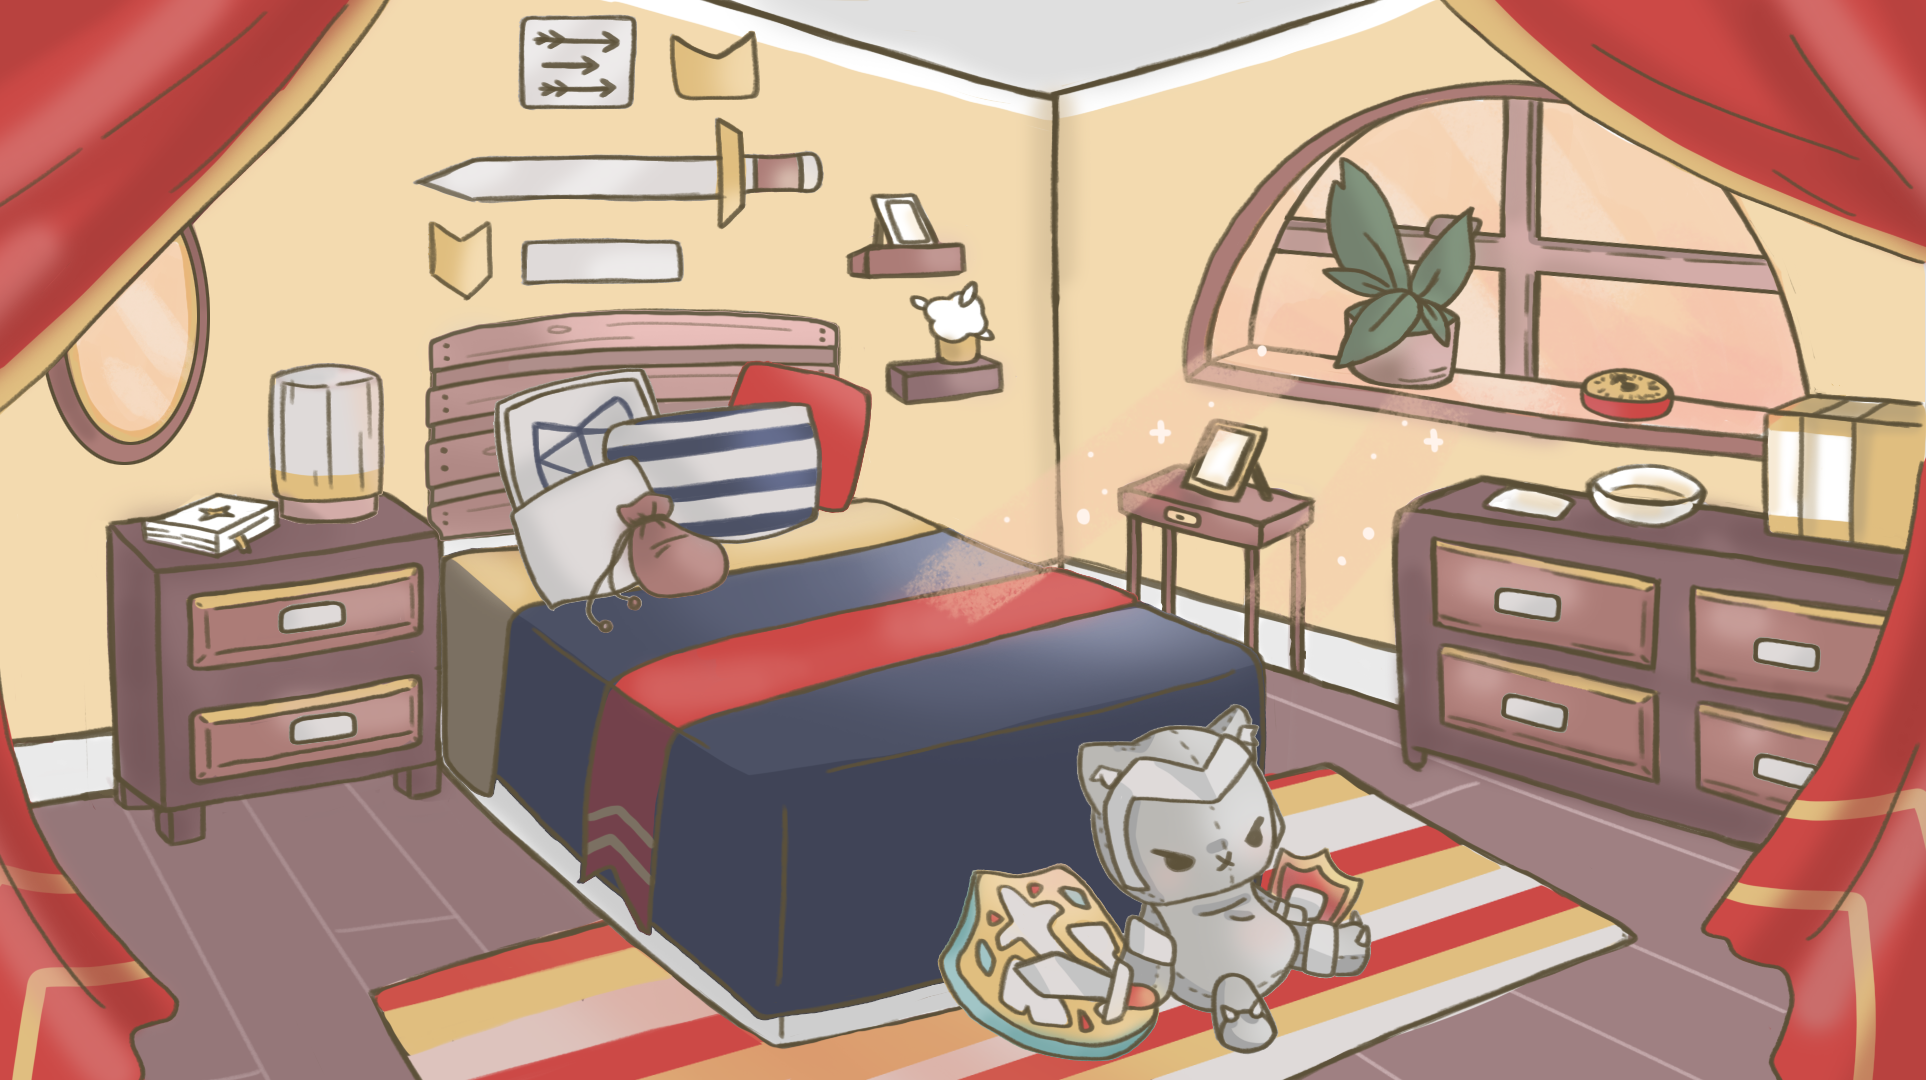 Adventurer's Bedroom